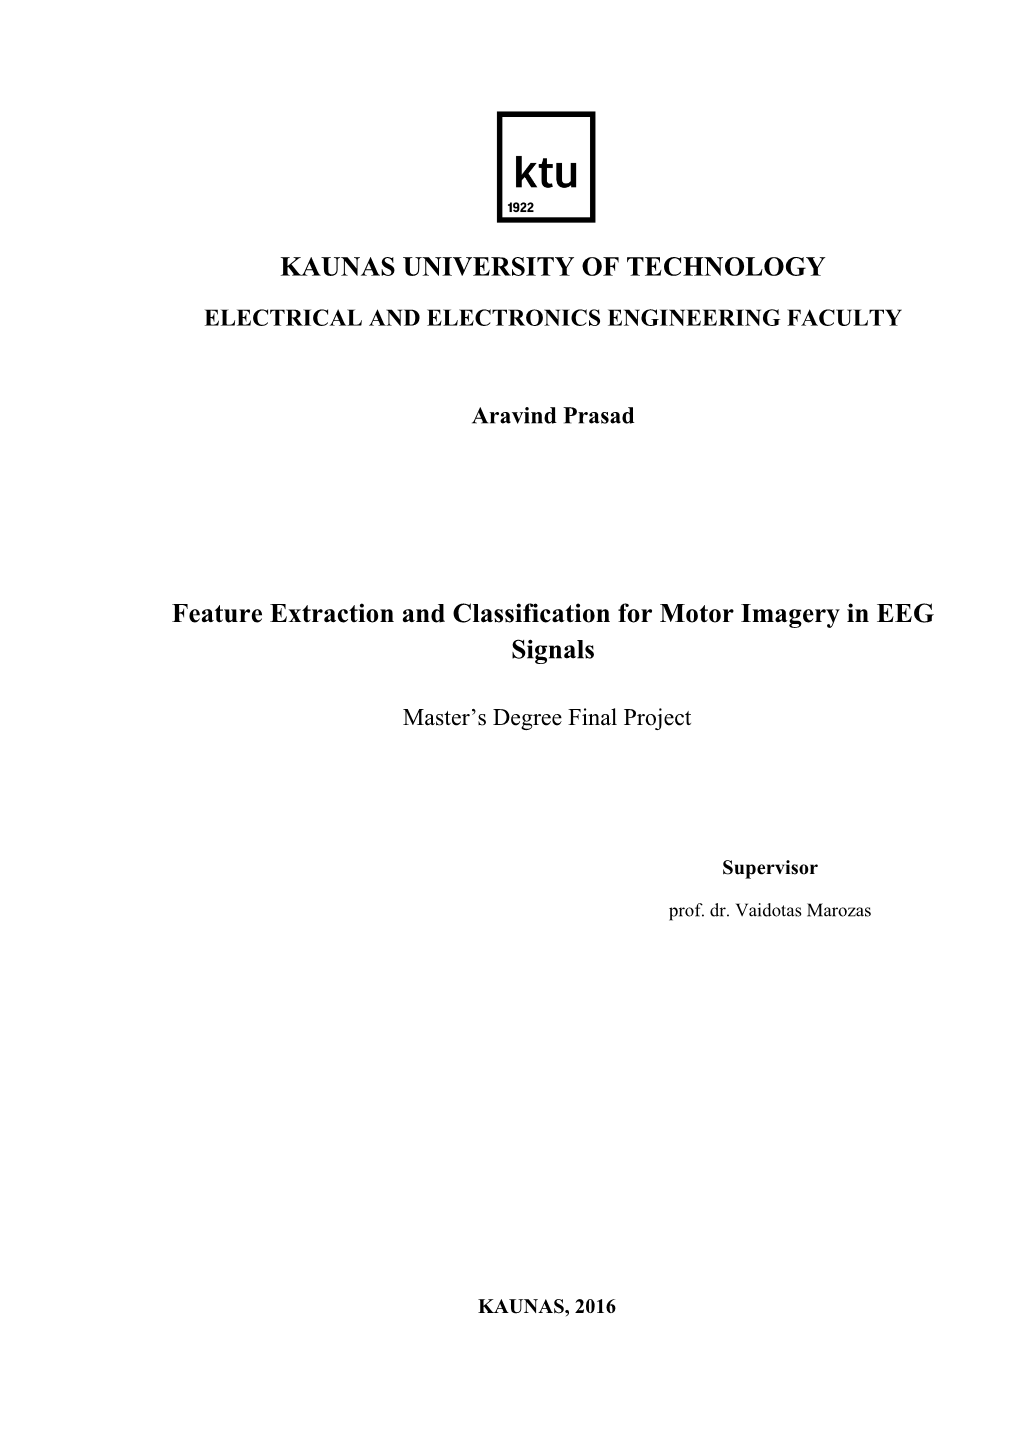 KAUNAS UNIVERSITY of TECHNOLOGY Feature Extraction